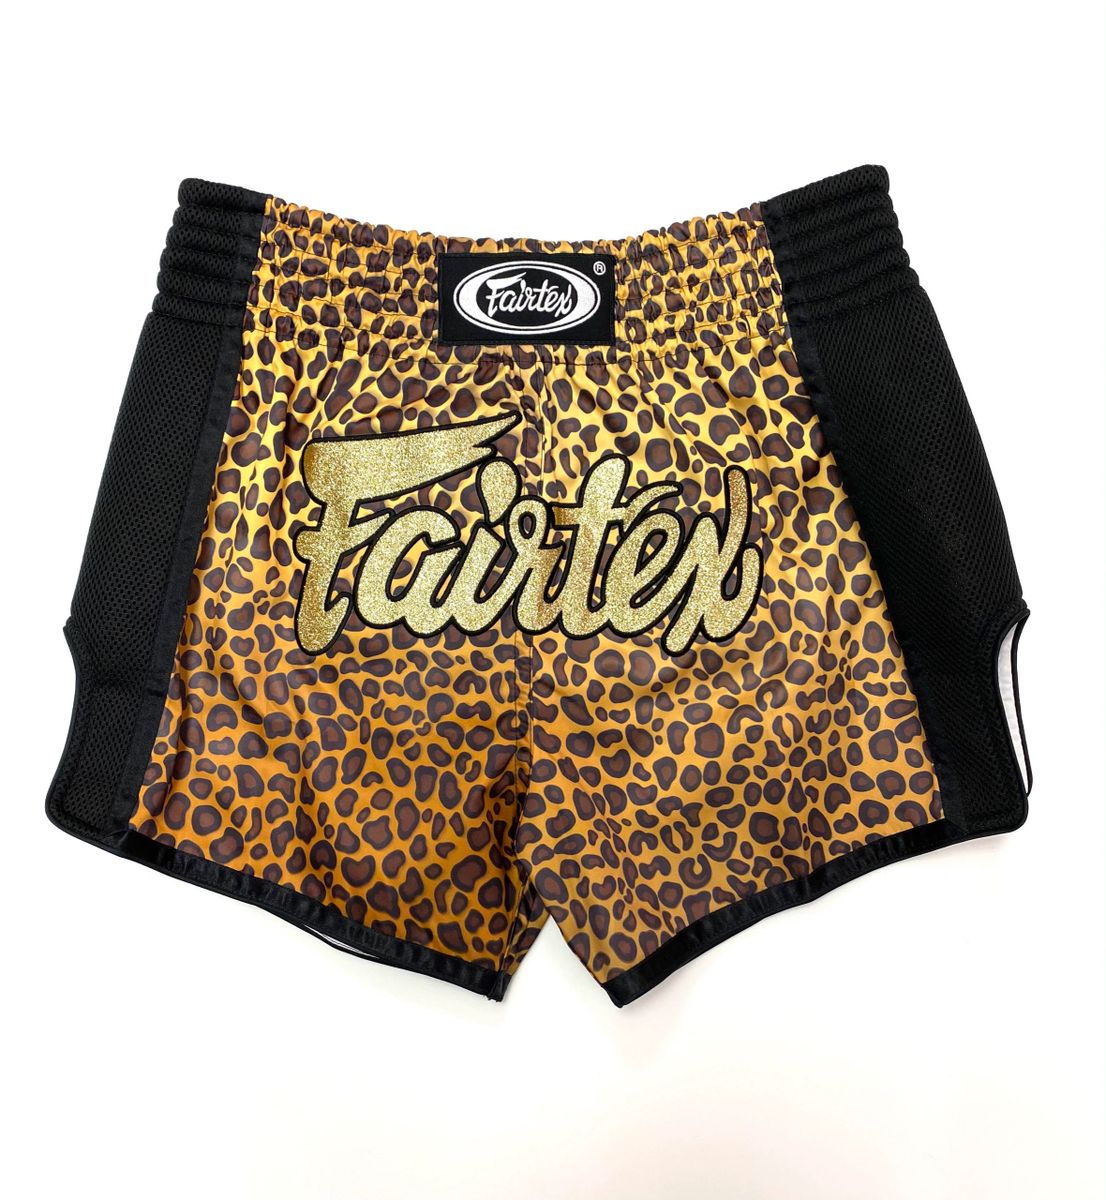 Fairtex Slim Fit Thai Shorts - Golden Cheetah